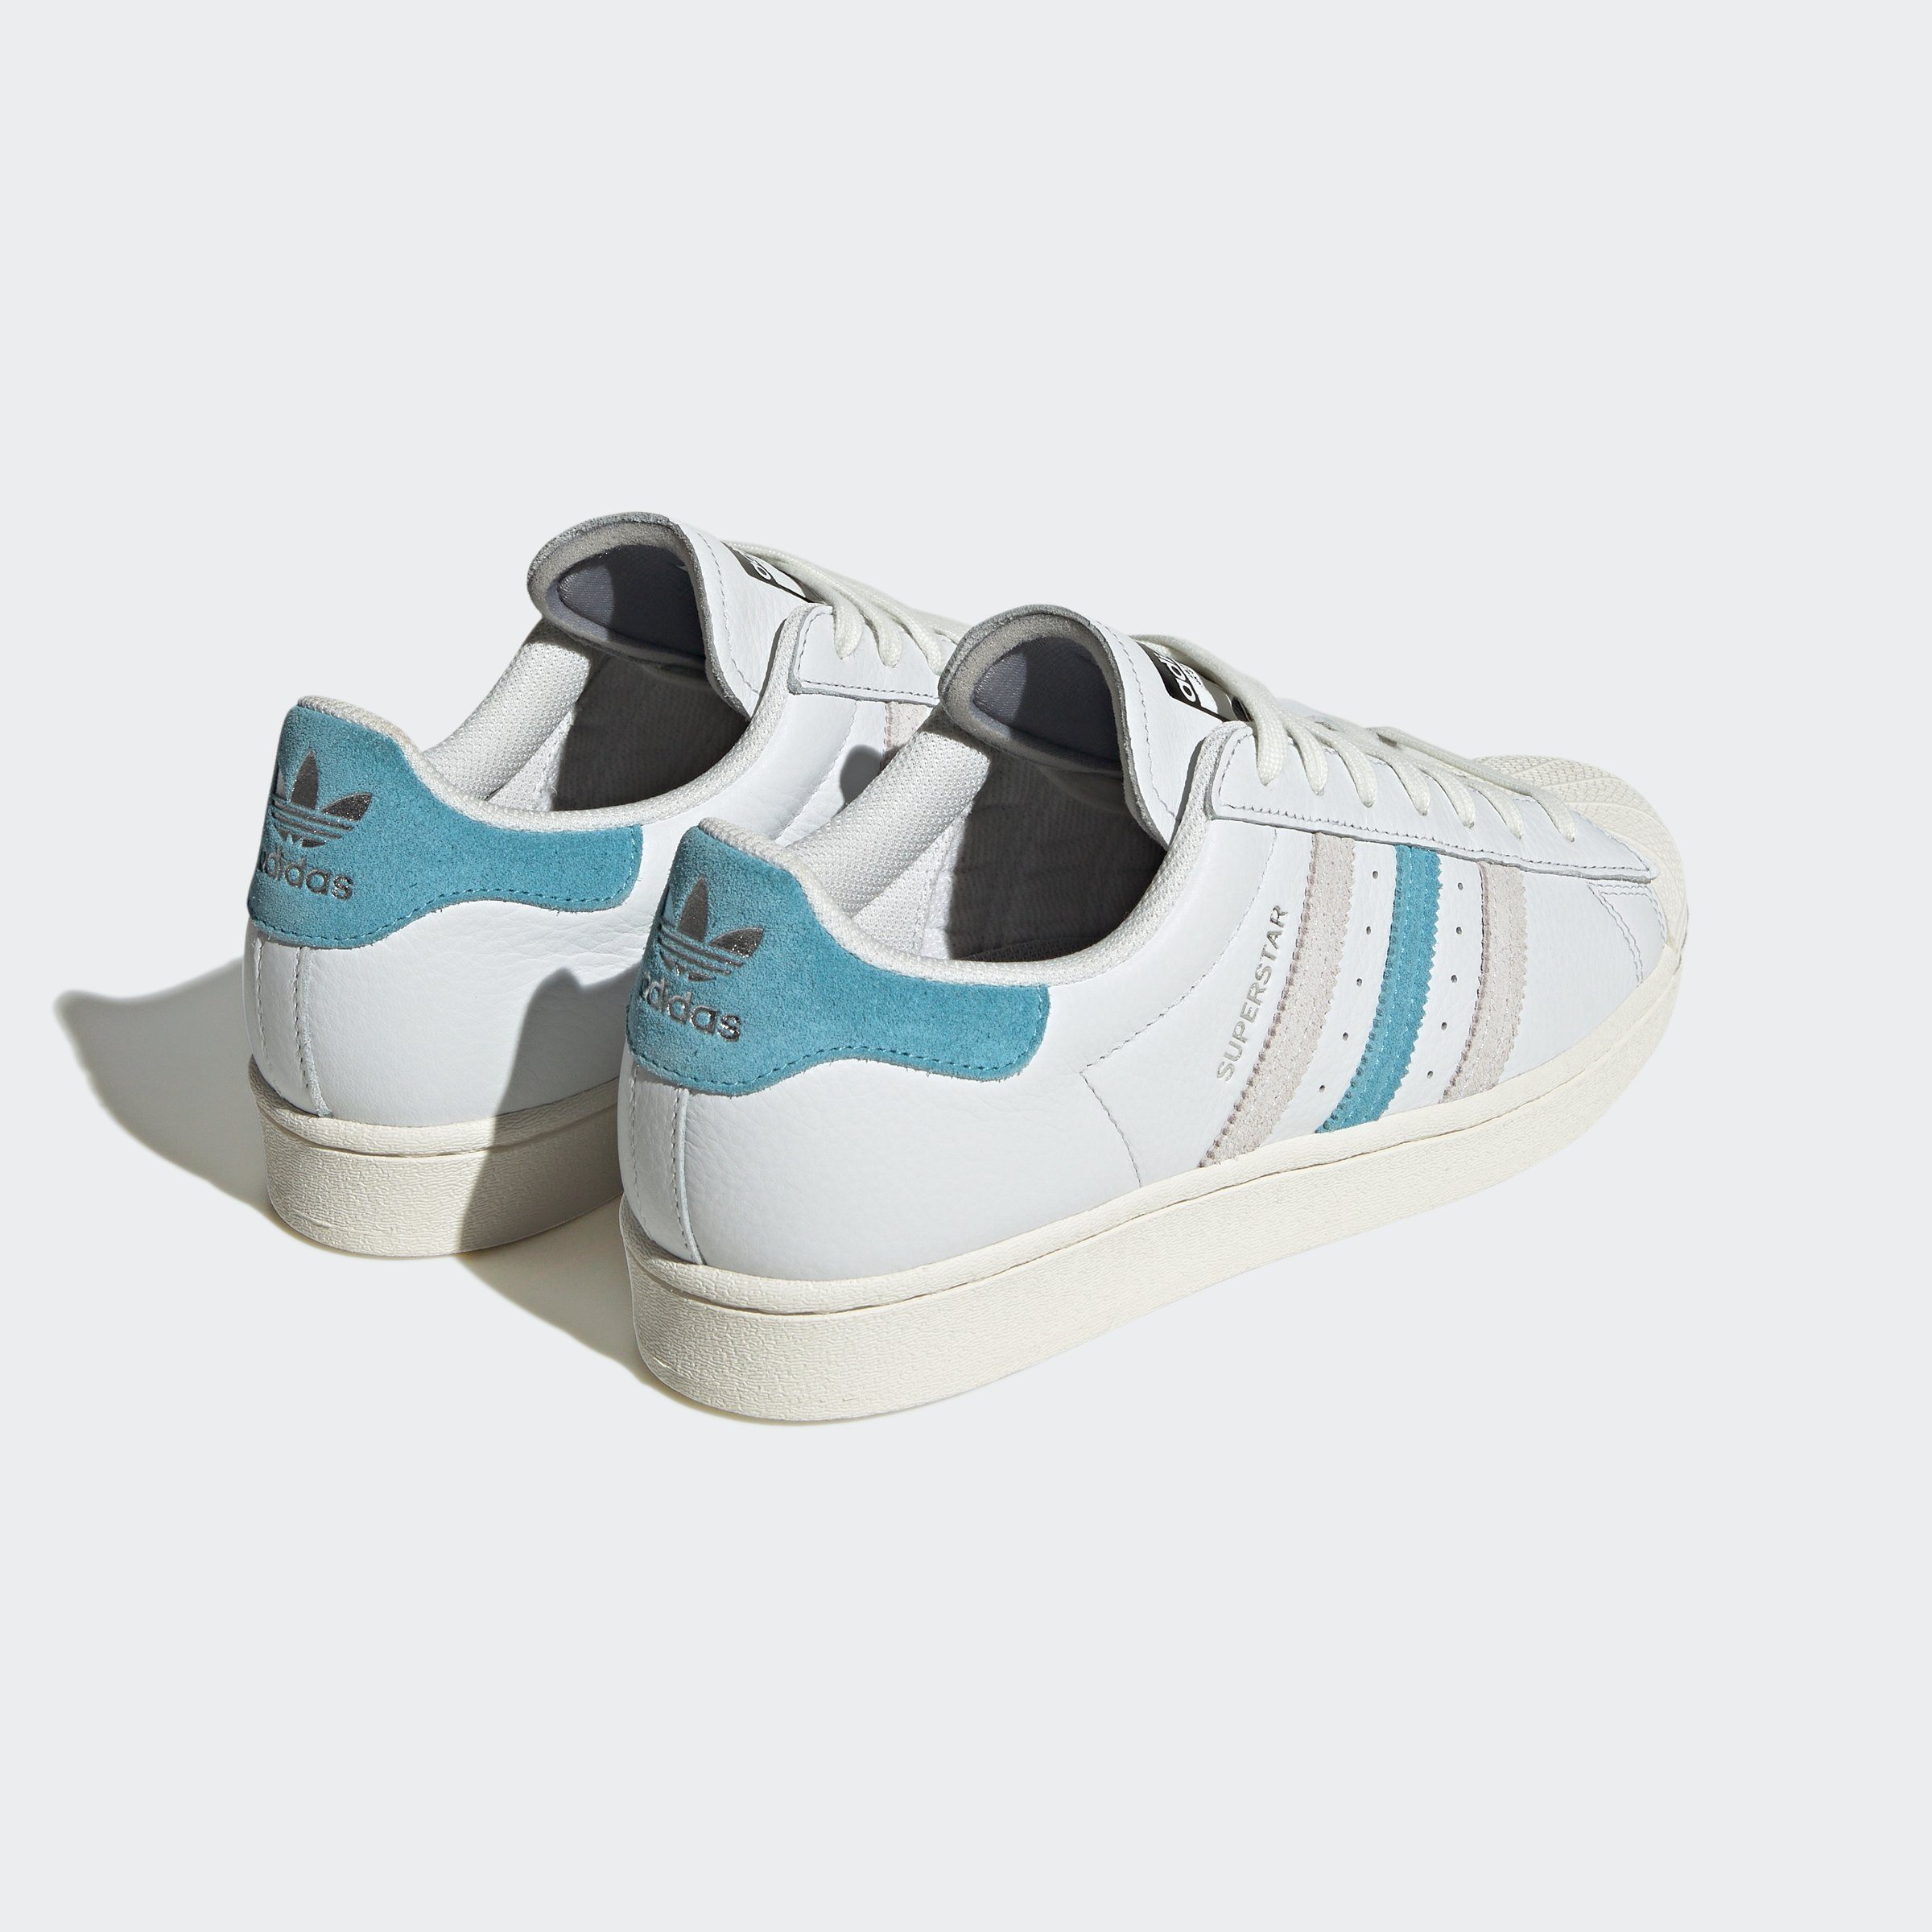 adidas Originals One White SUPERSTAR Preloved Sneaker / Grey Cream Blue 